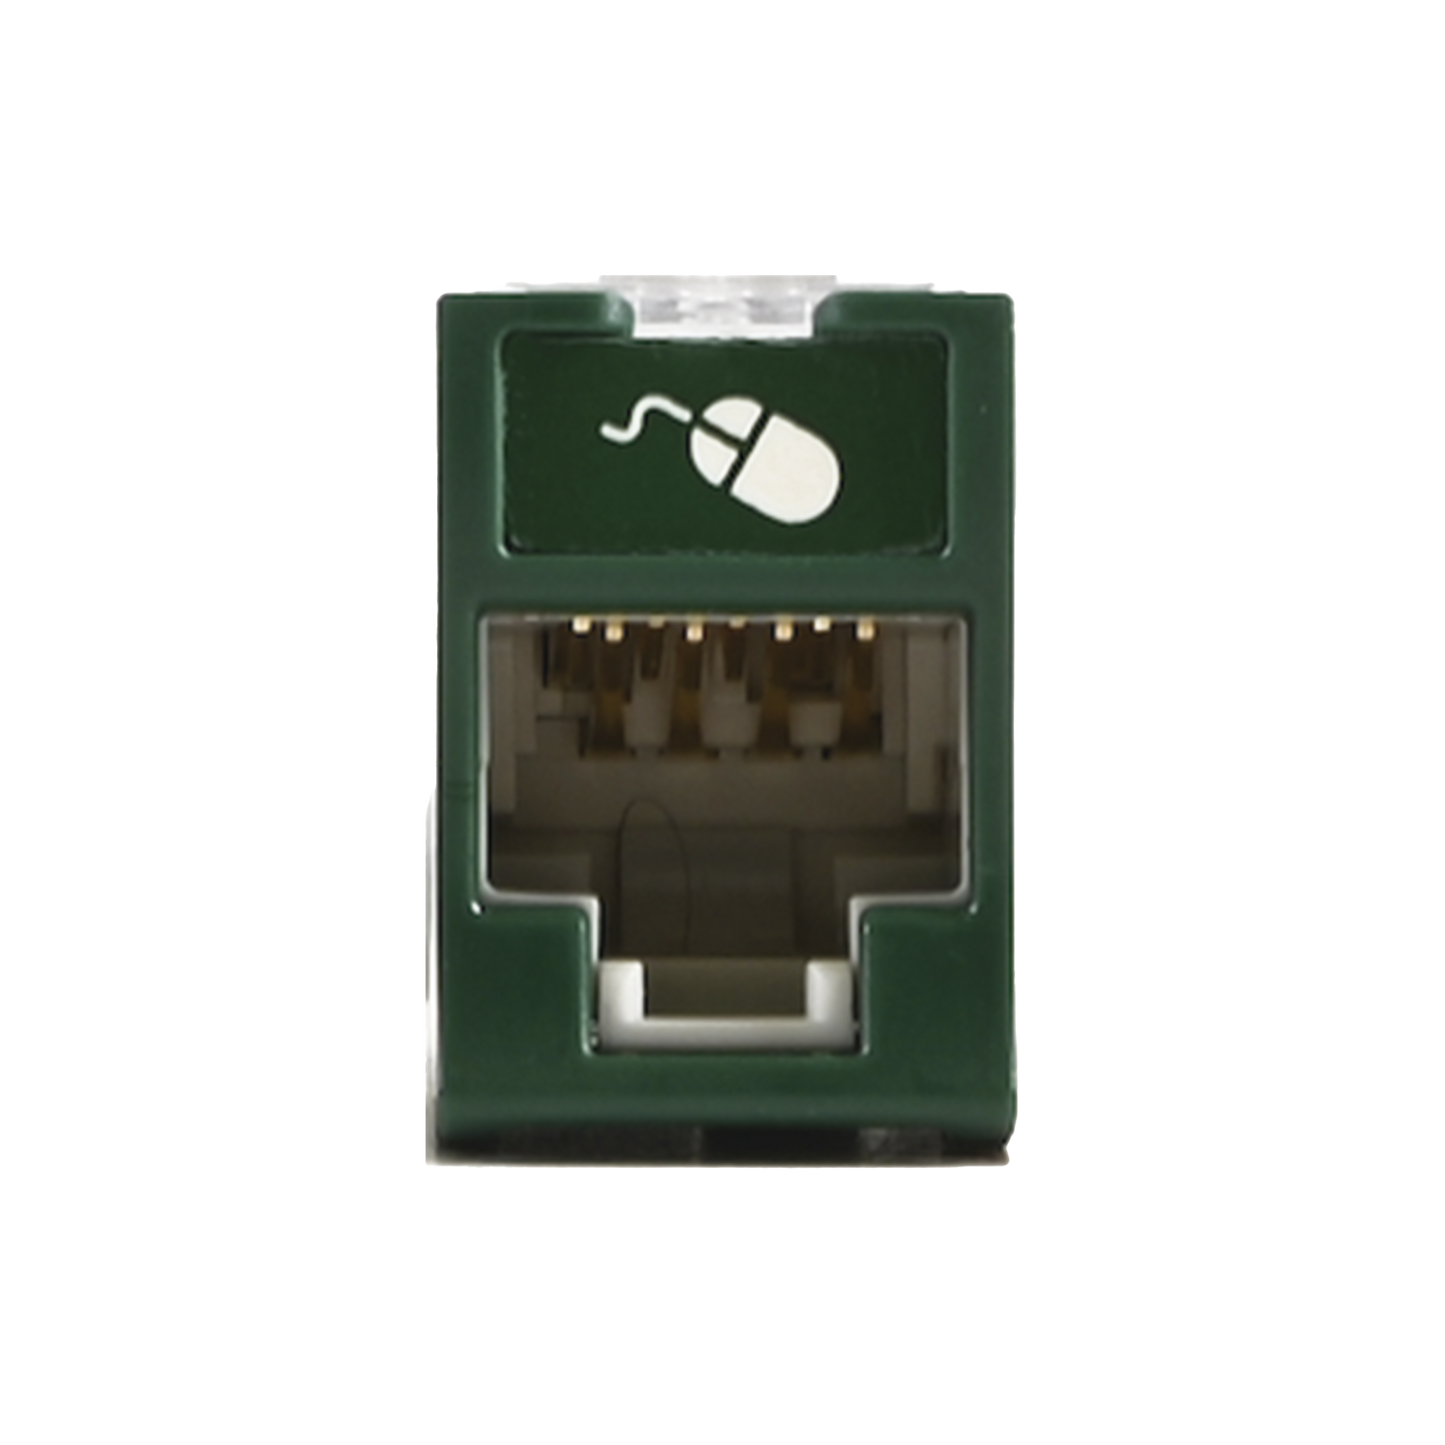 Jack UltraMAX Cat6, UTP, Montaje híbrido en Placa de Pared (Plano y Angulado), Color Verde, Punch Down